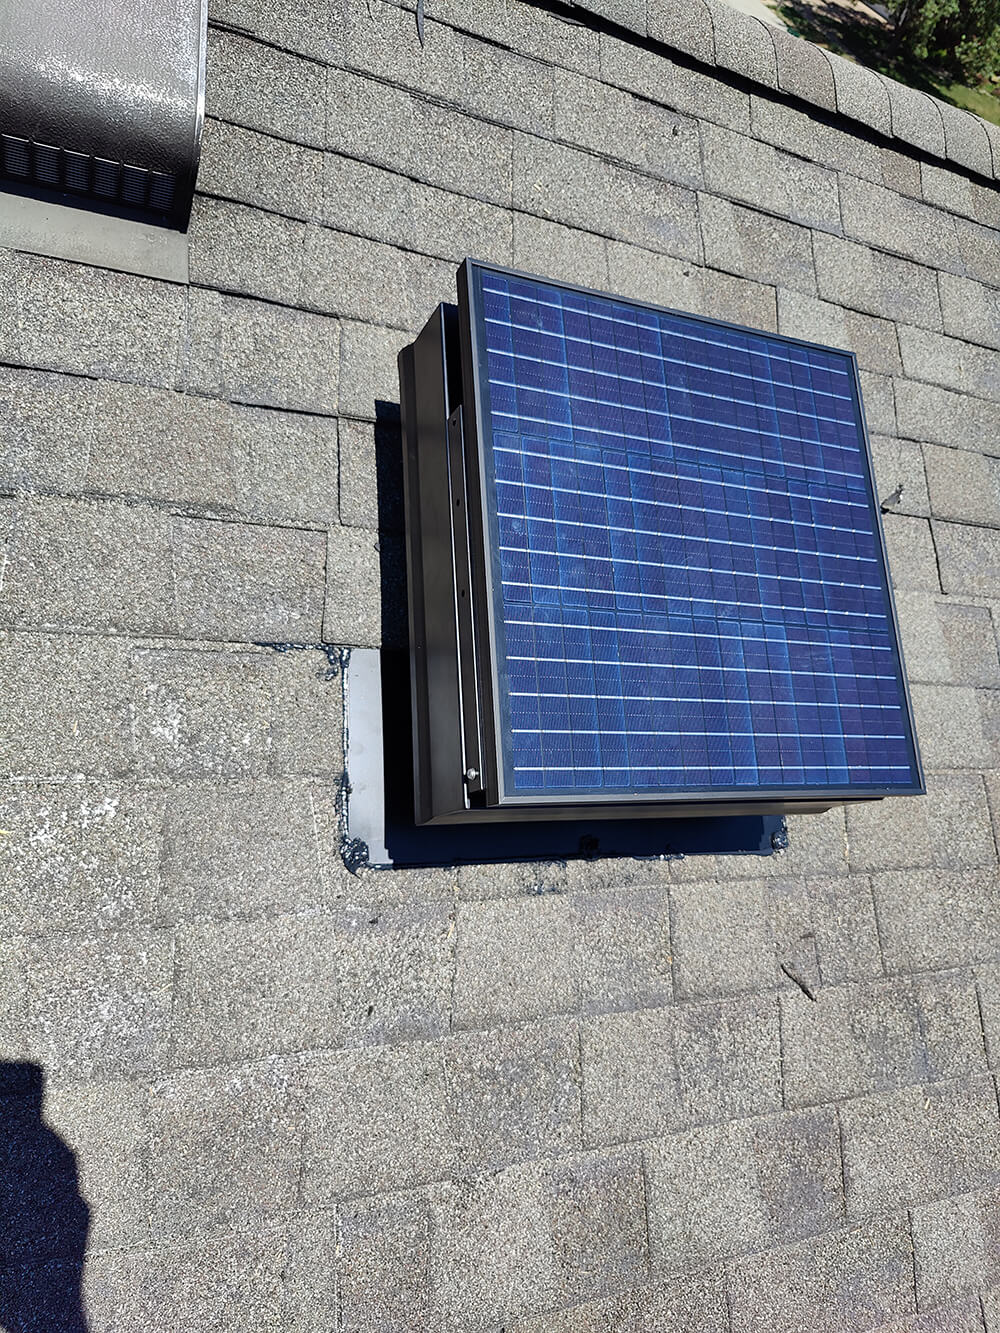 solar-attic-ventilation-fans-nashville-koala-insulation